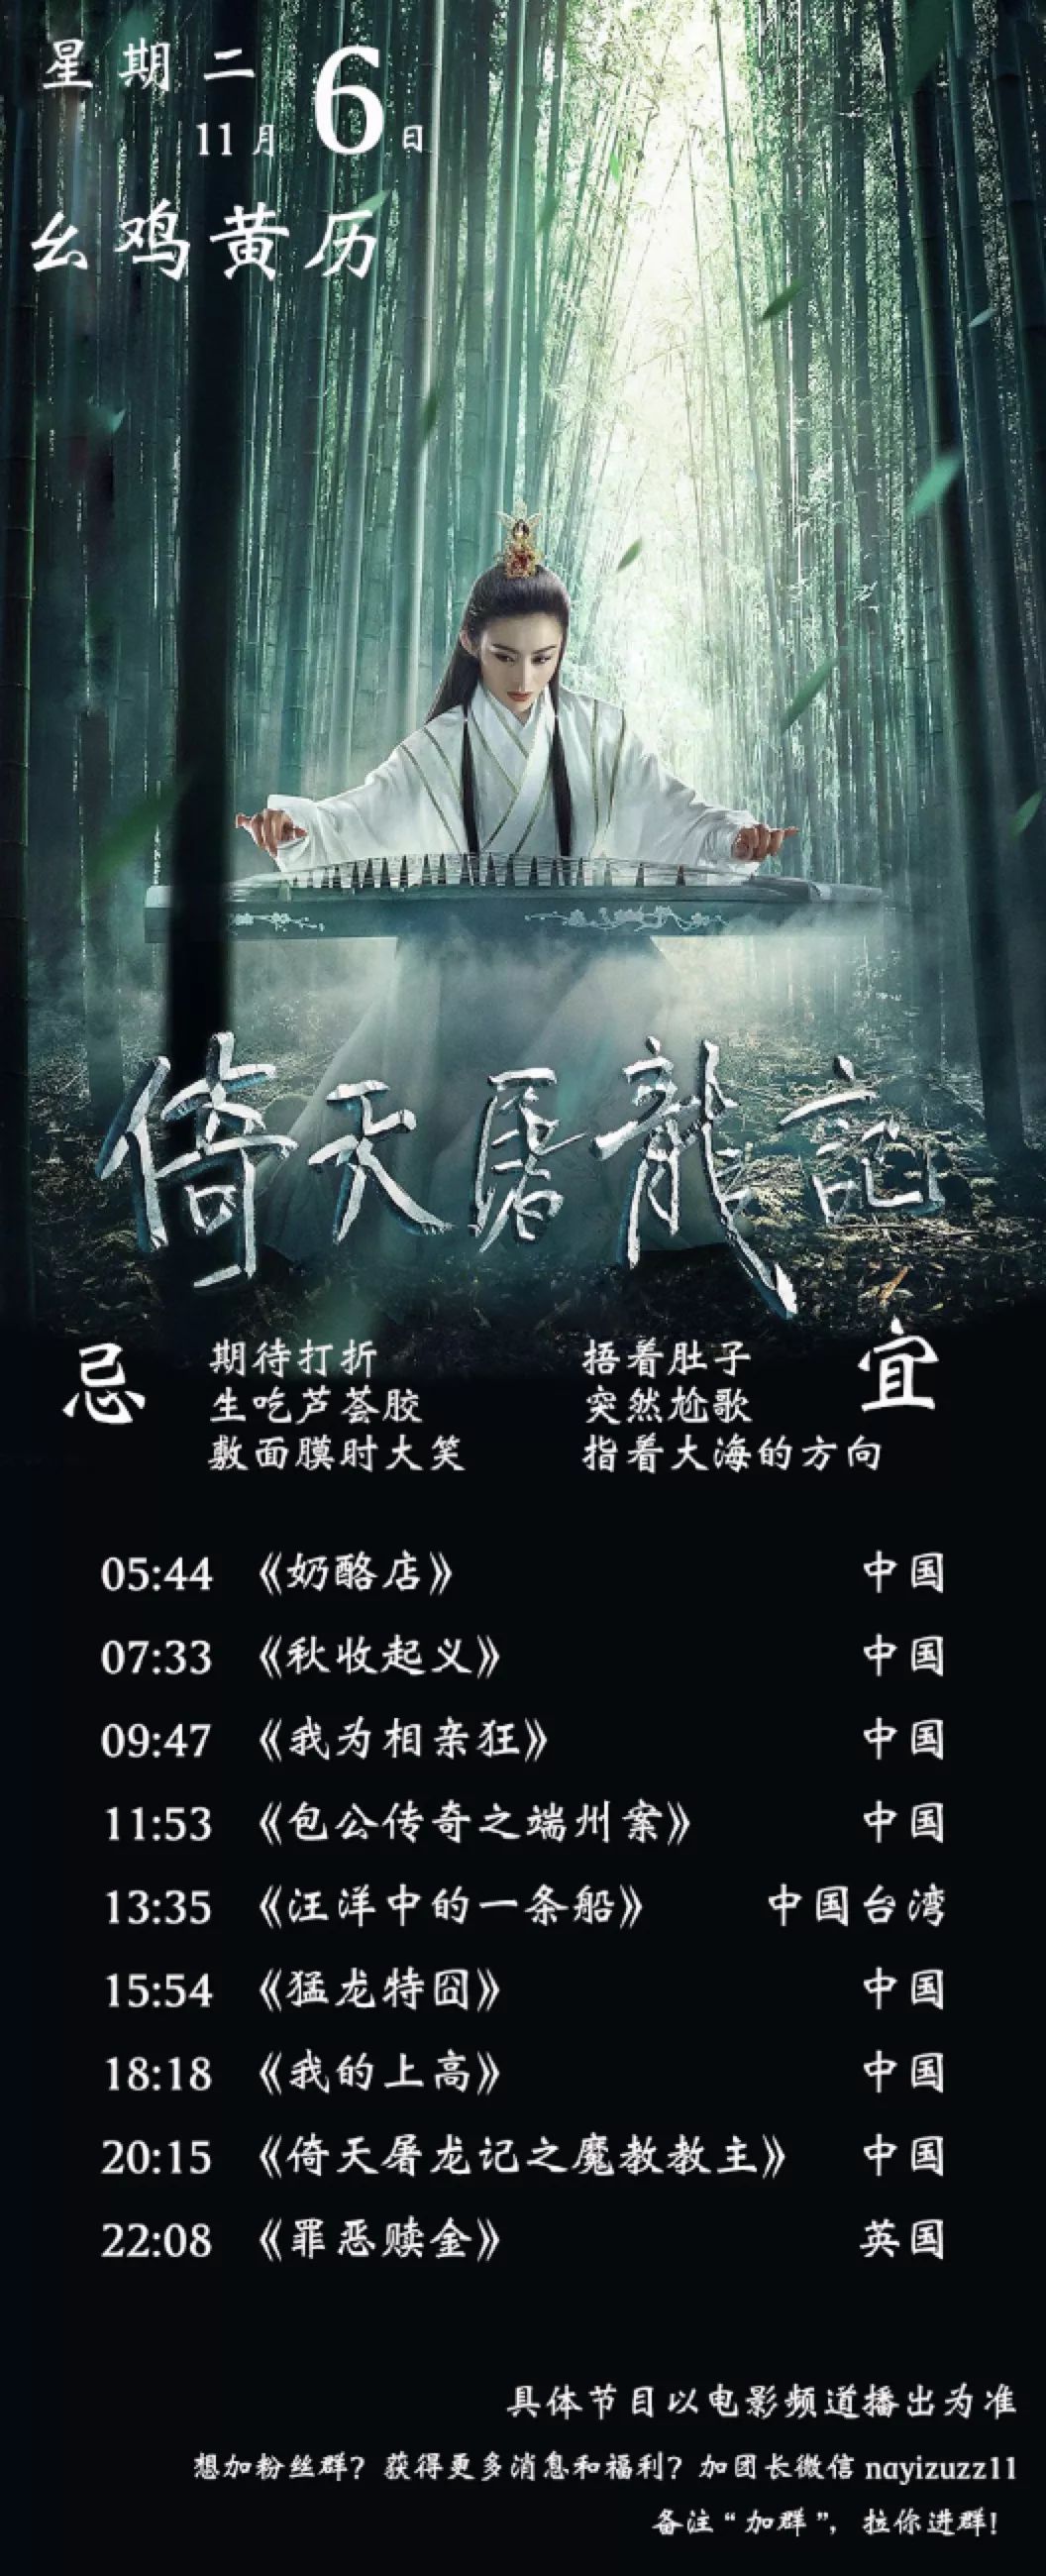 11月6日CCTV6电影频道节目单 | 预见佳片